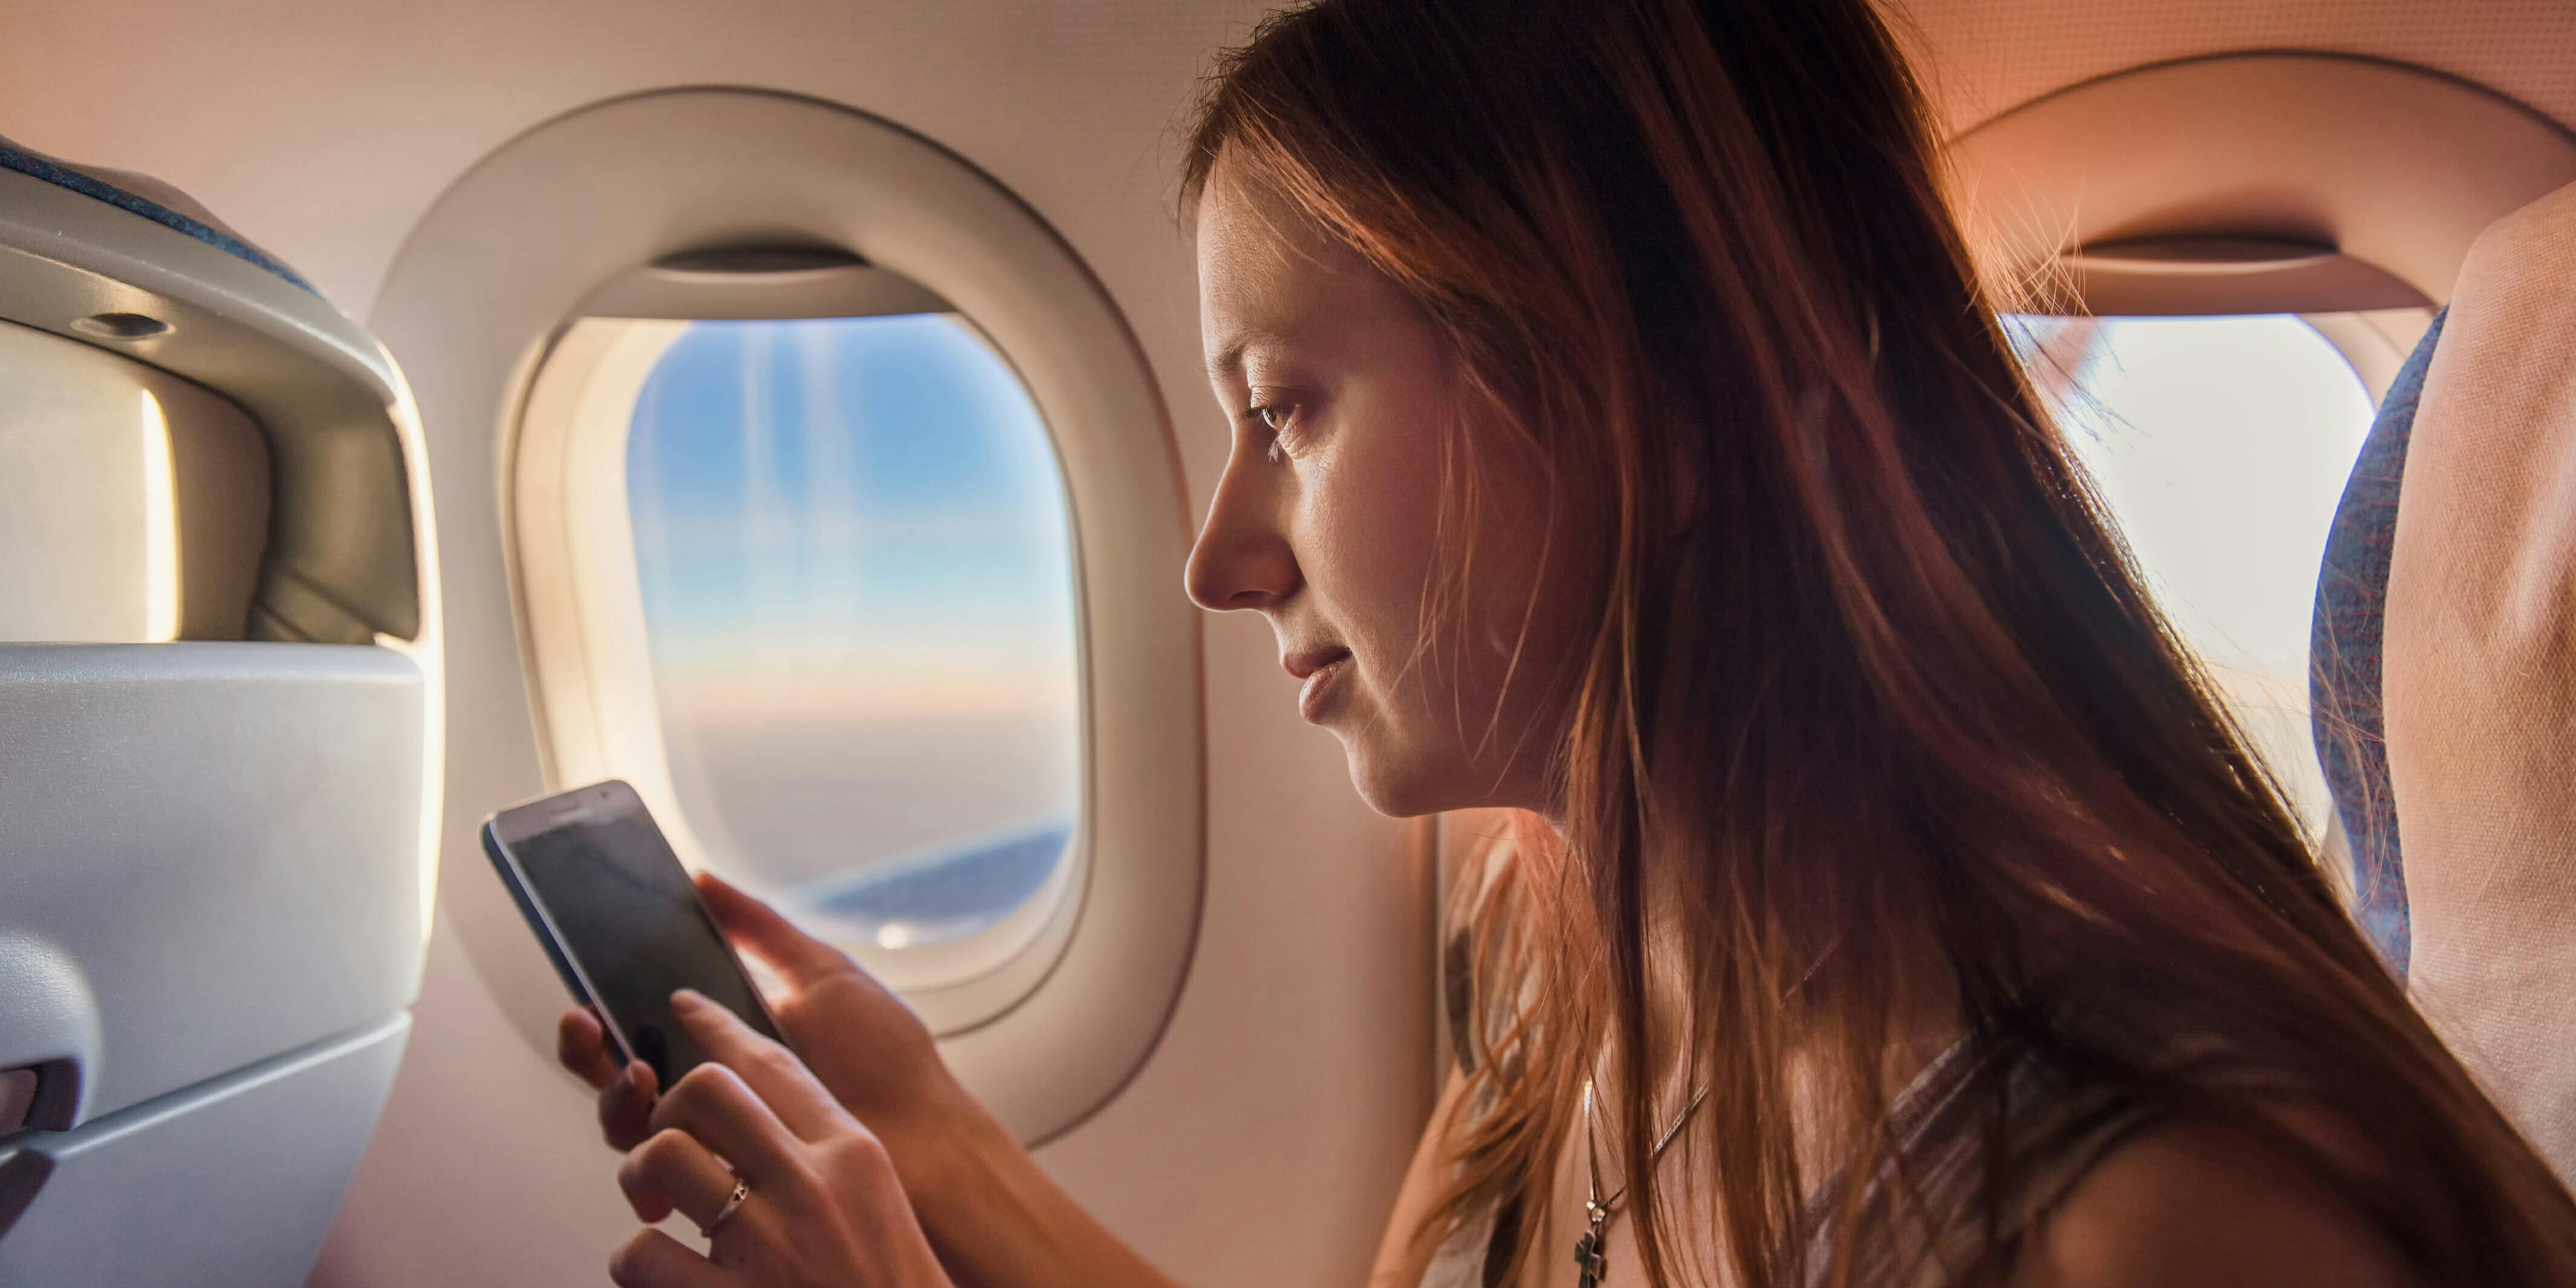 Телефон во время полета в самолете. Человек с телефоном в самолете. Мобильник в самолете. Самолет. Девушка с телефоном в самолете.